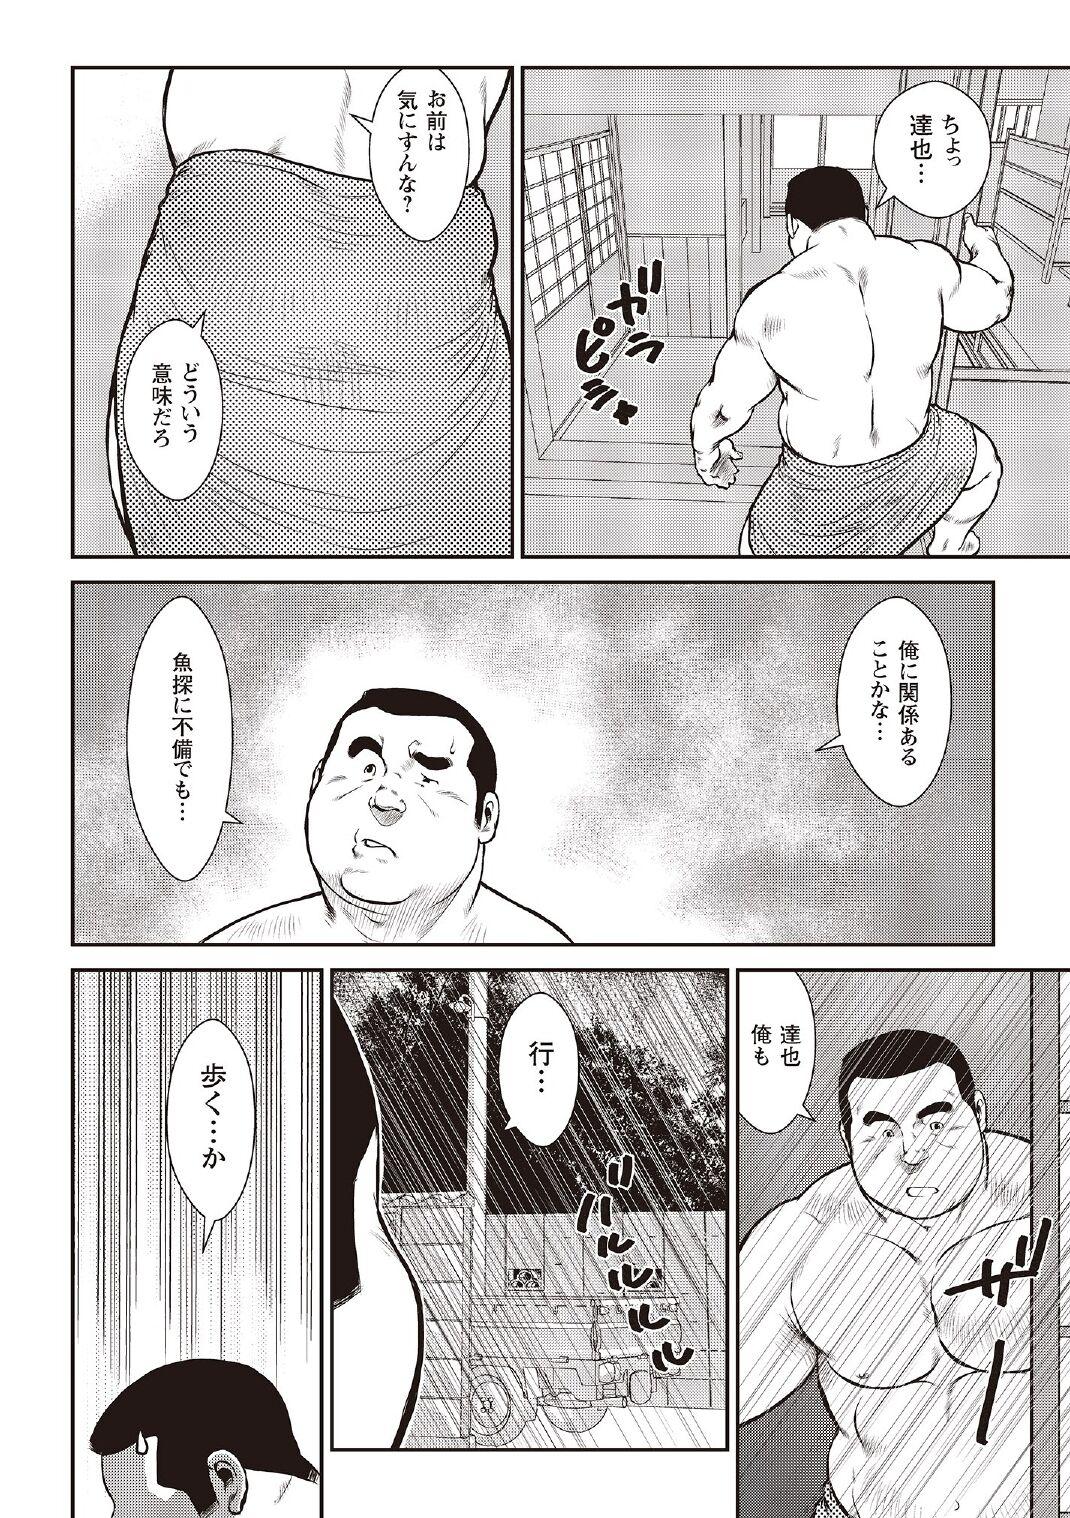 [Ebisubashi Seizou] Ebisubashi Seizou Tanpen Manga Shuu 2 Fuuun! Danshi Ryou [Bunsatsuban] PART 3 Bousou Hantou Taifuu Zensen Ch. 3 ~ Ch. 5 [Digital] 37